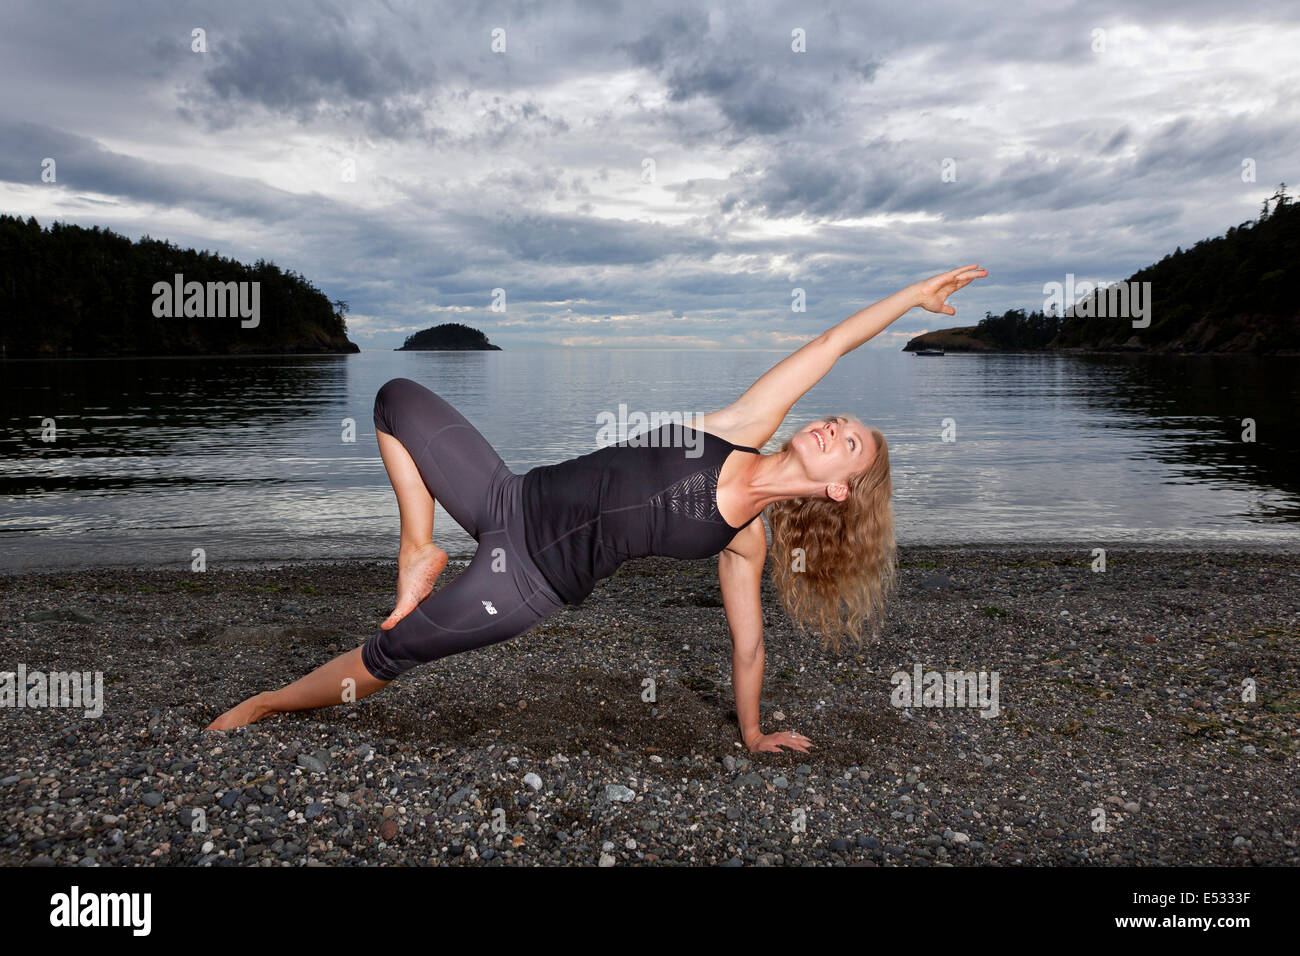 WASHINGTON - istruttore yoga Carly Hayden in fase di riscaldamento. Foto Stock